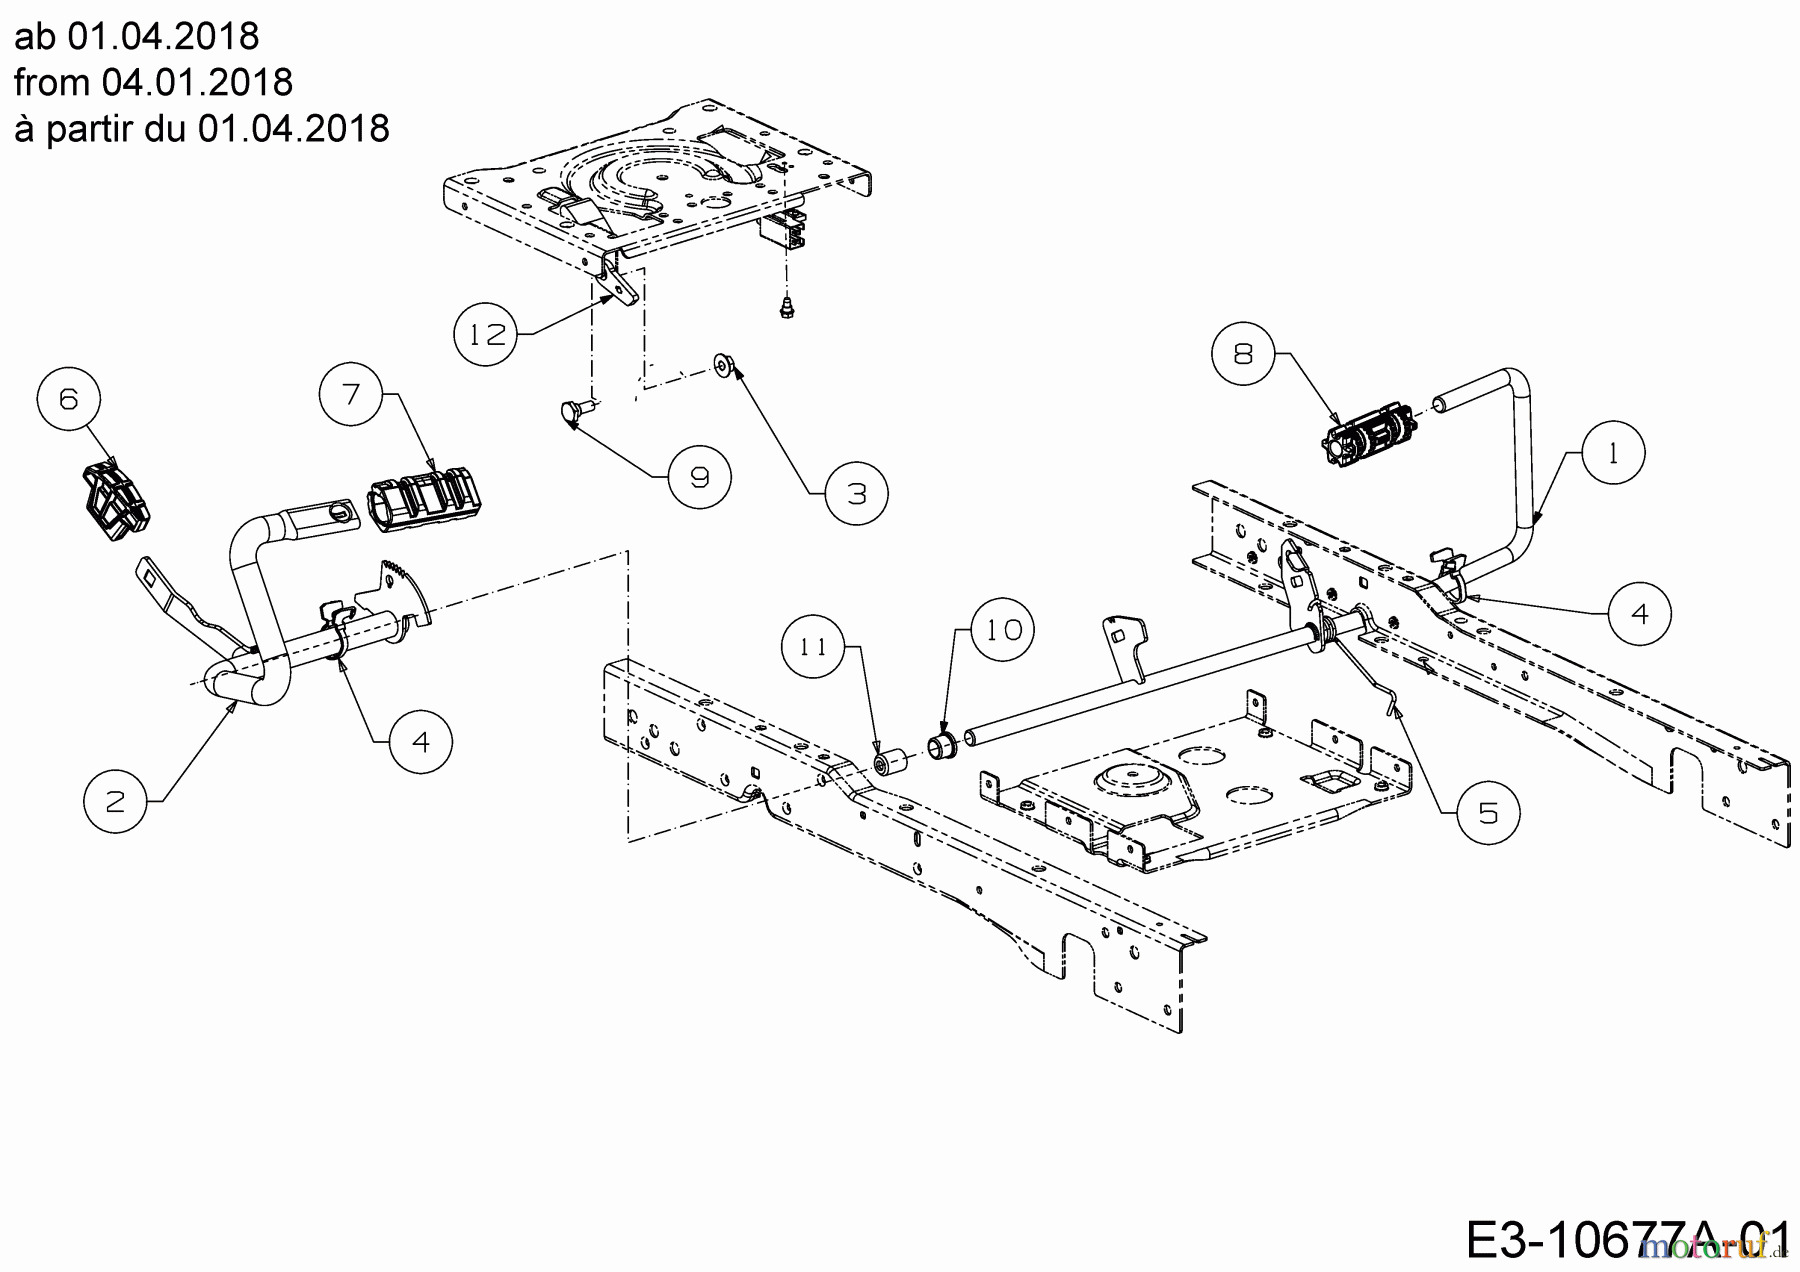  Cub Cadet Lawn tractors XT2 PS117 13BGA1CT603  (2019) Pedals from 04.01.2018